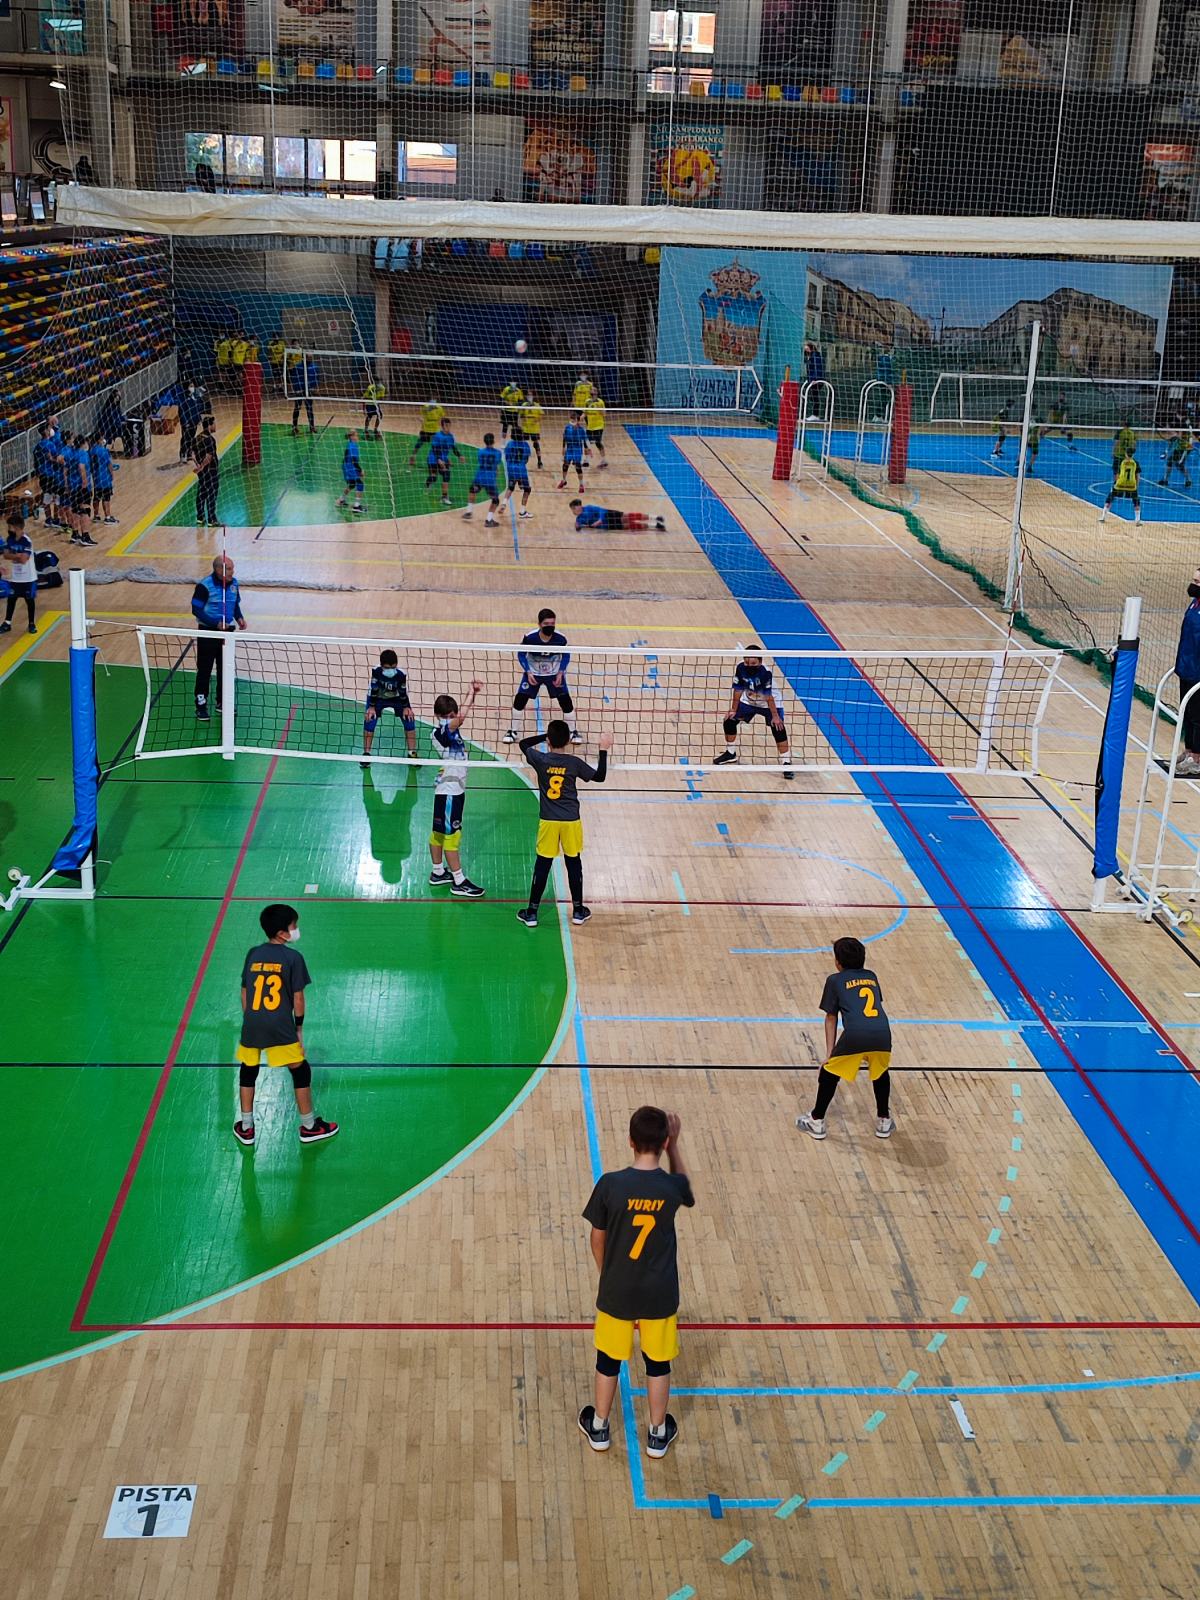 Instalaciones donde se ha realizado esta competición deportiva en Castilla-La Mancha